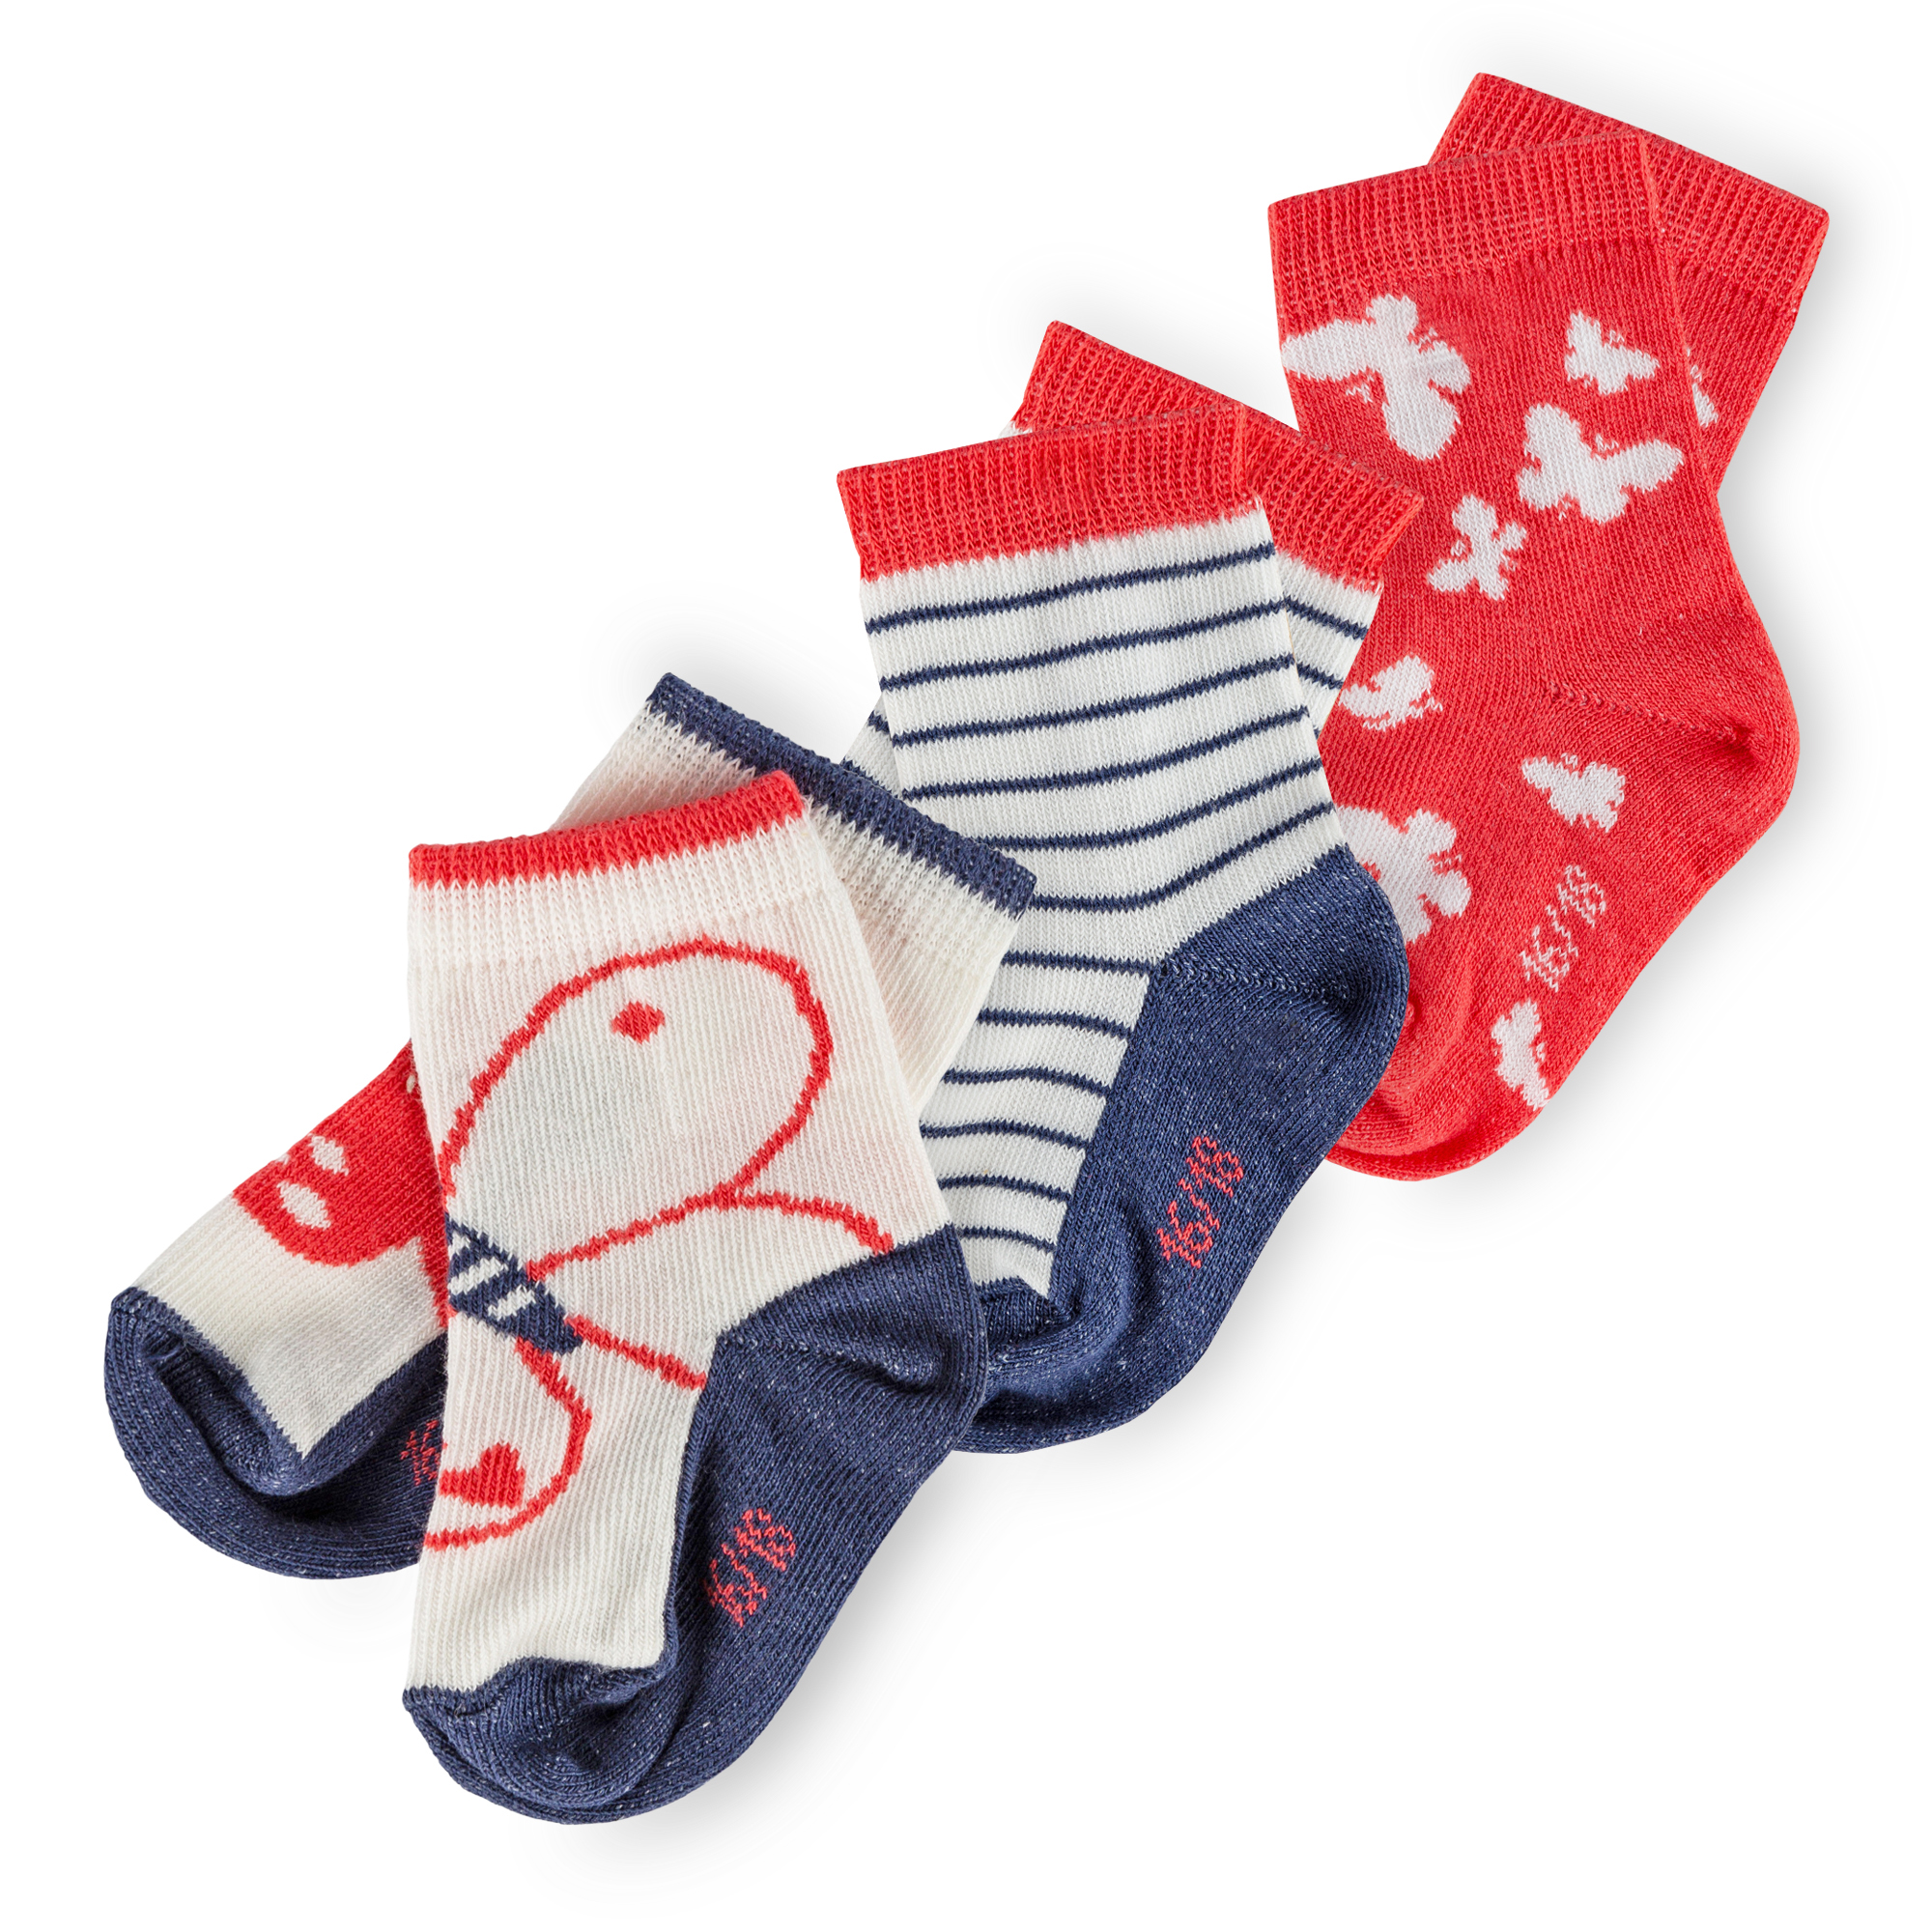 3 pair set baby socks